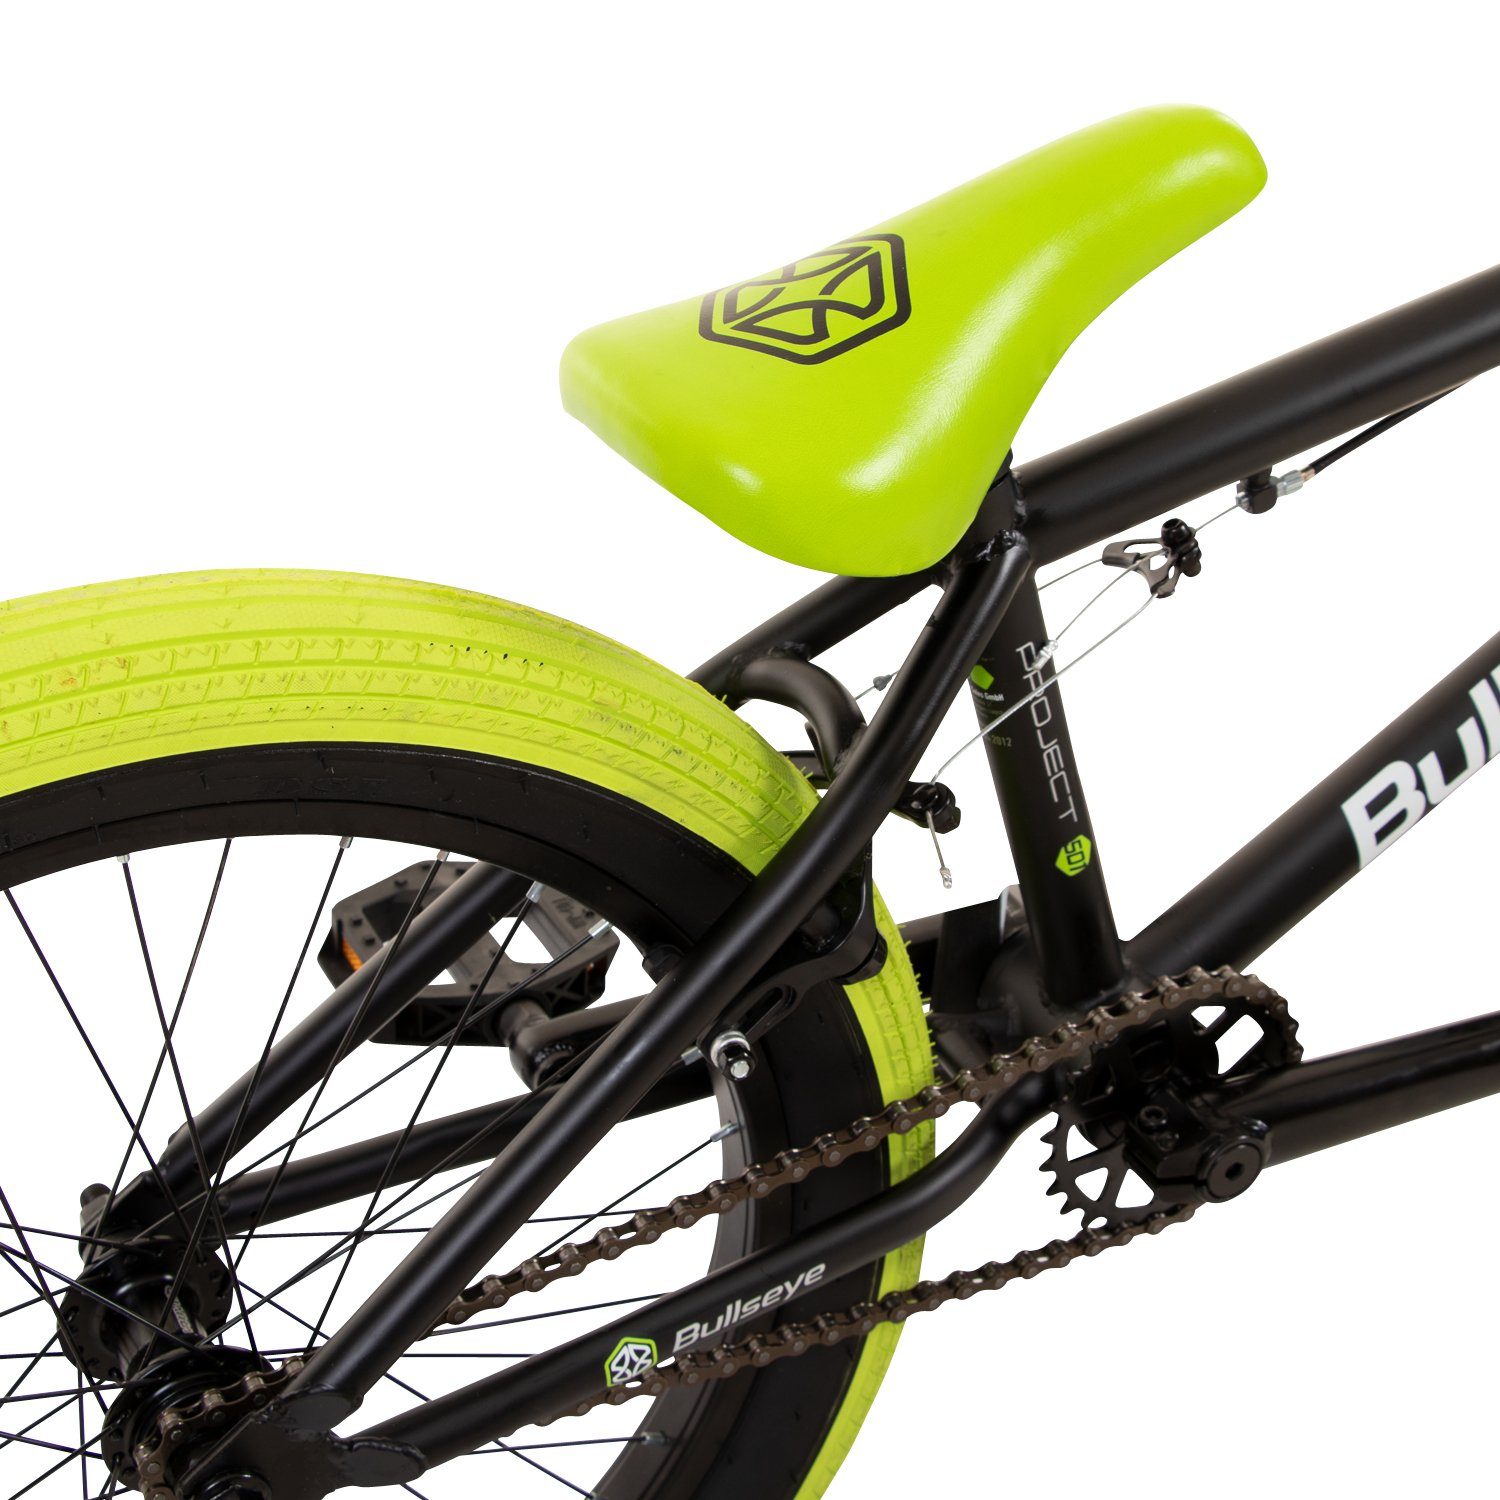 BMX 501, cm 145 Jugendliche Erwachsene ohne bullseye schwarz/grün - Gang, Pegs 175 1 Fahrrad unisex BMX-Rad mit Schaltung, Project